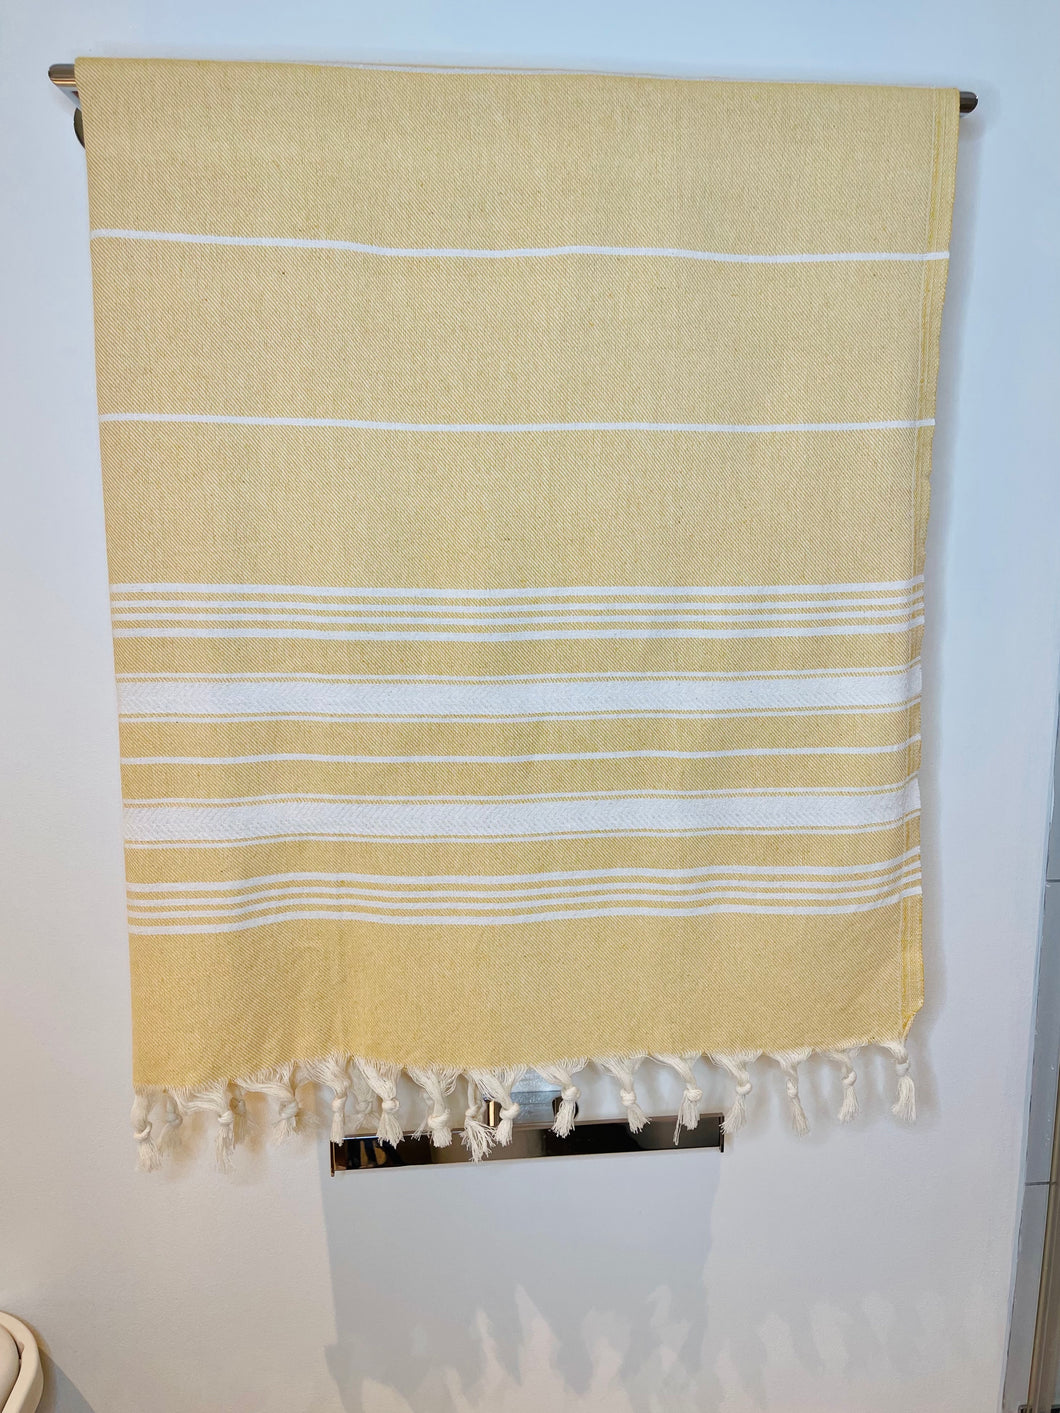 Soft Peshtemal - Turkish Bath/Beach Towel – Herringbone Yellow